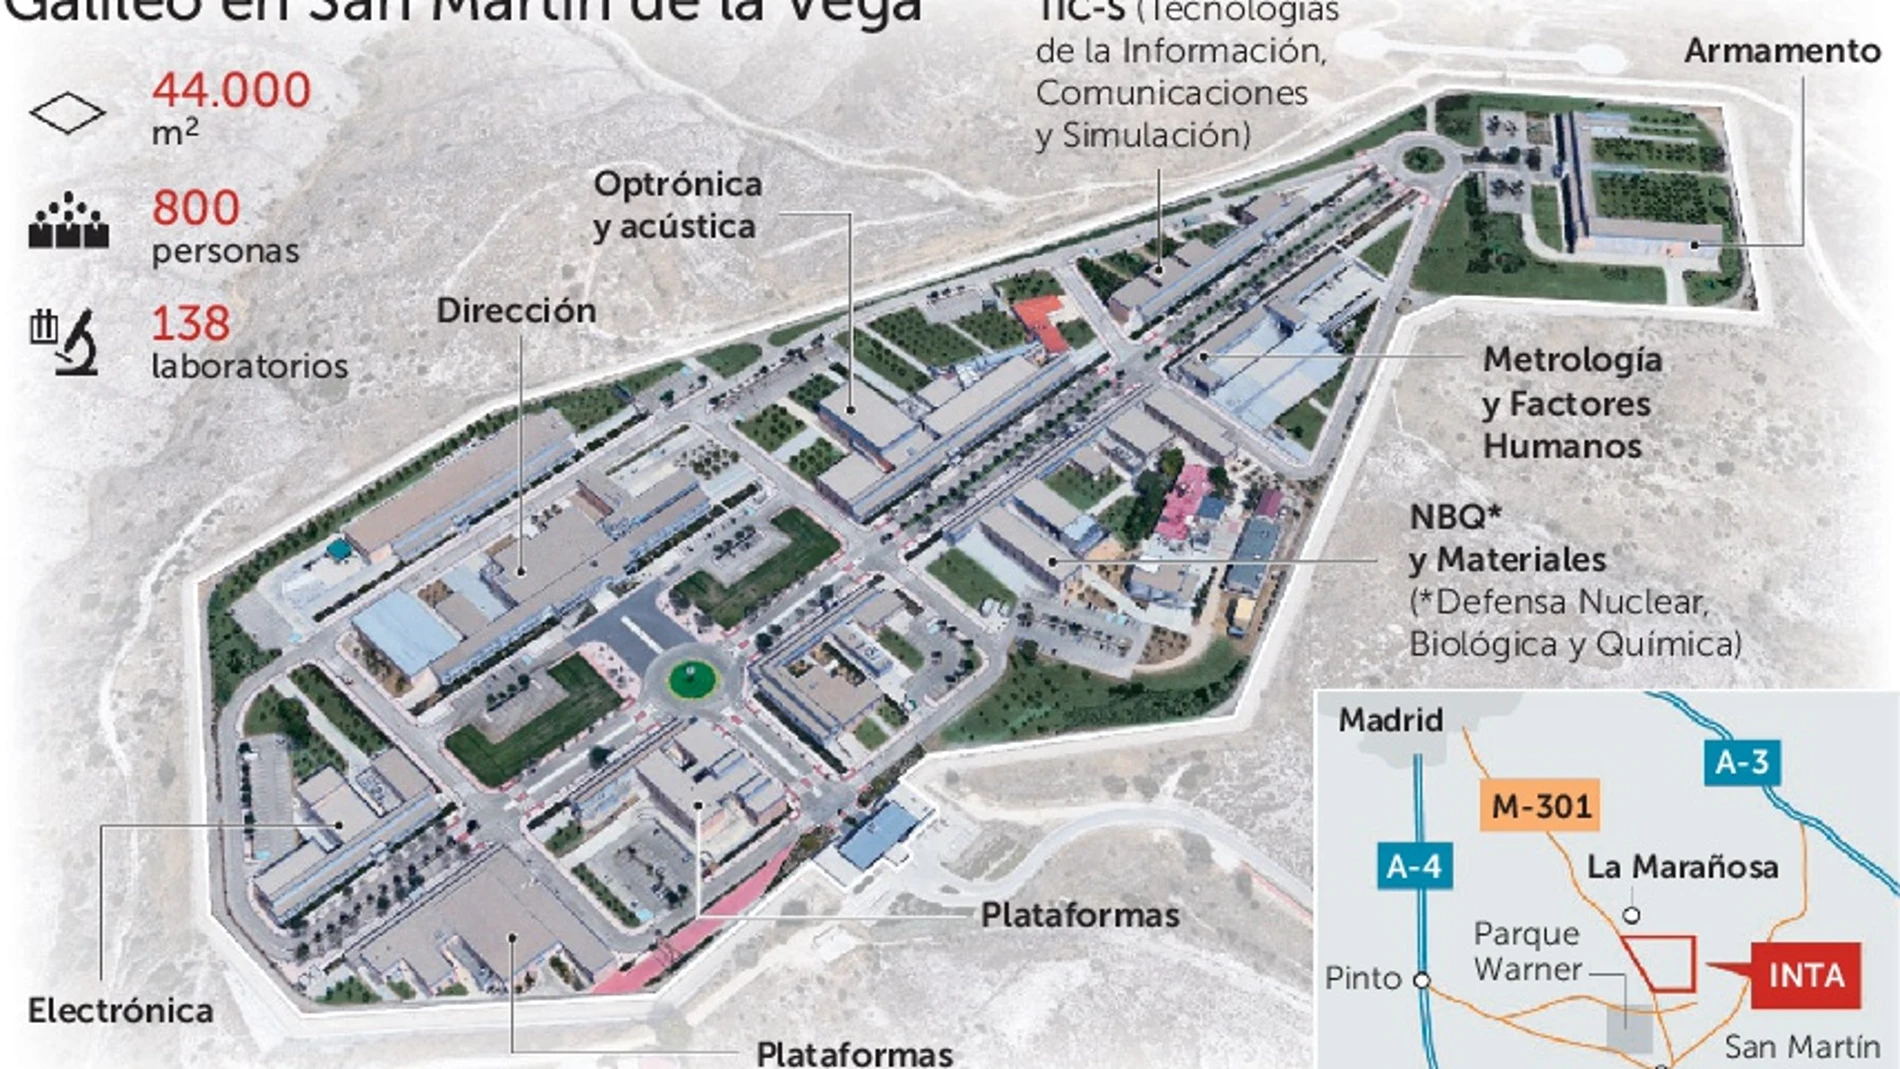 La «estimación» del personal con que contará esta sede una vez esté plenamente operativa en Madrid es de «entre tres y 30 personas».